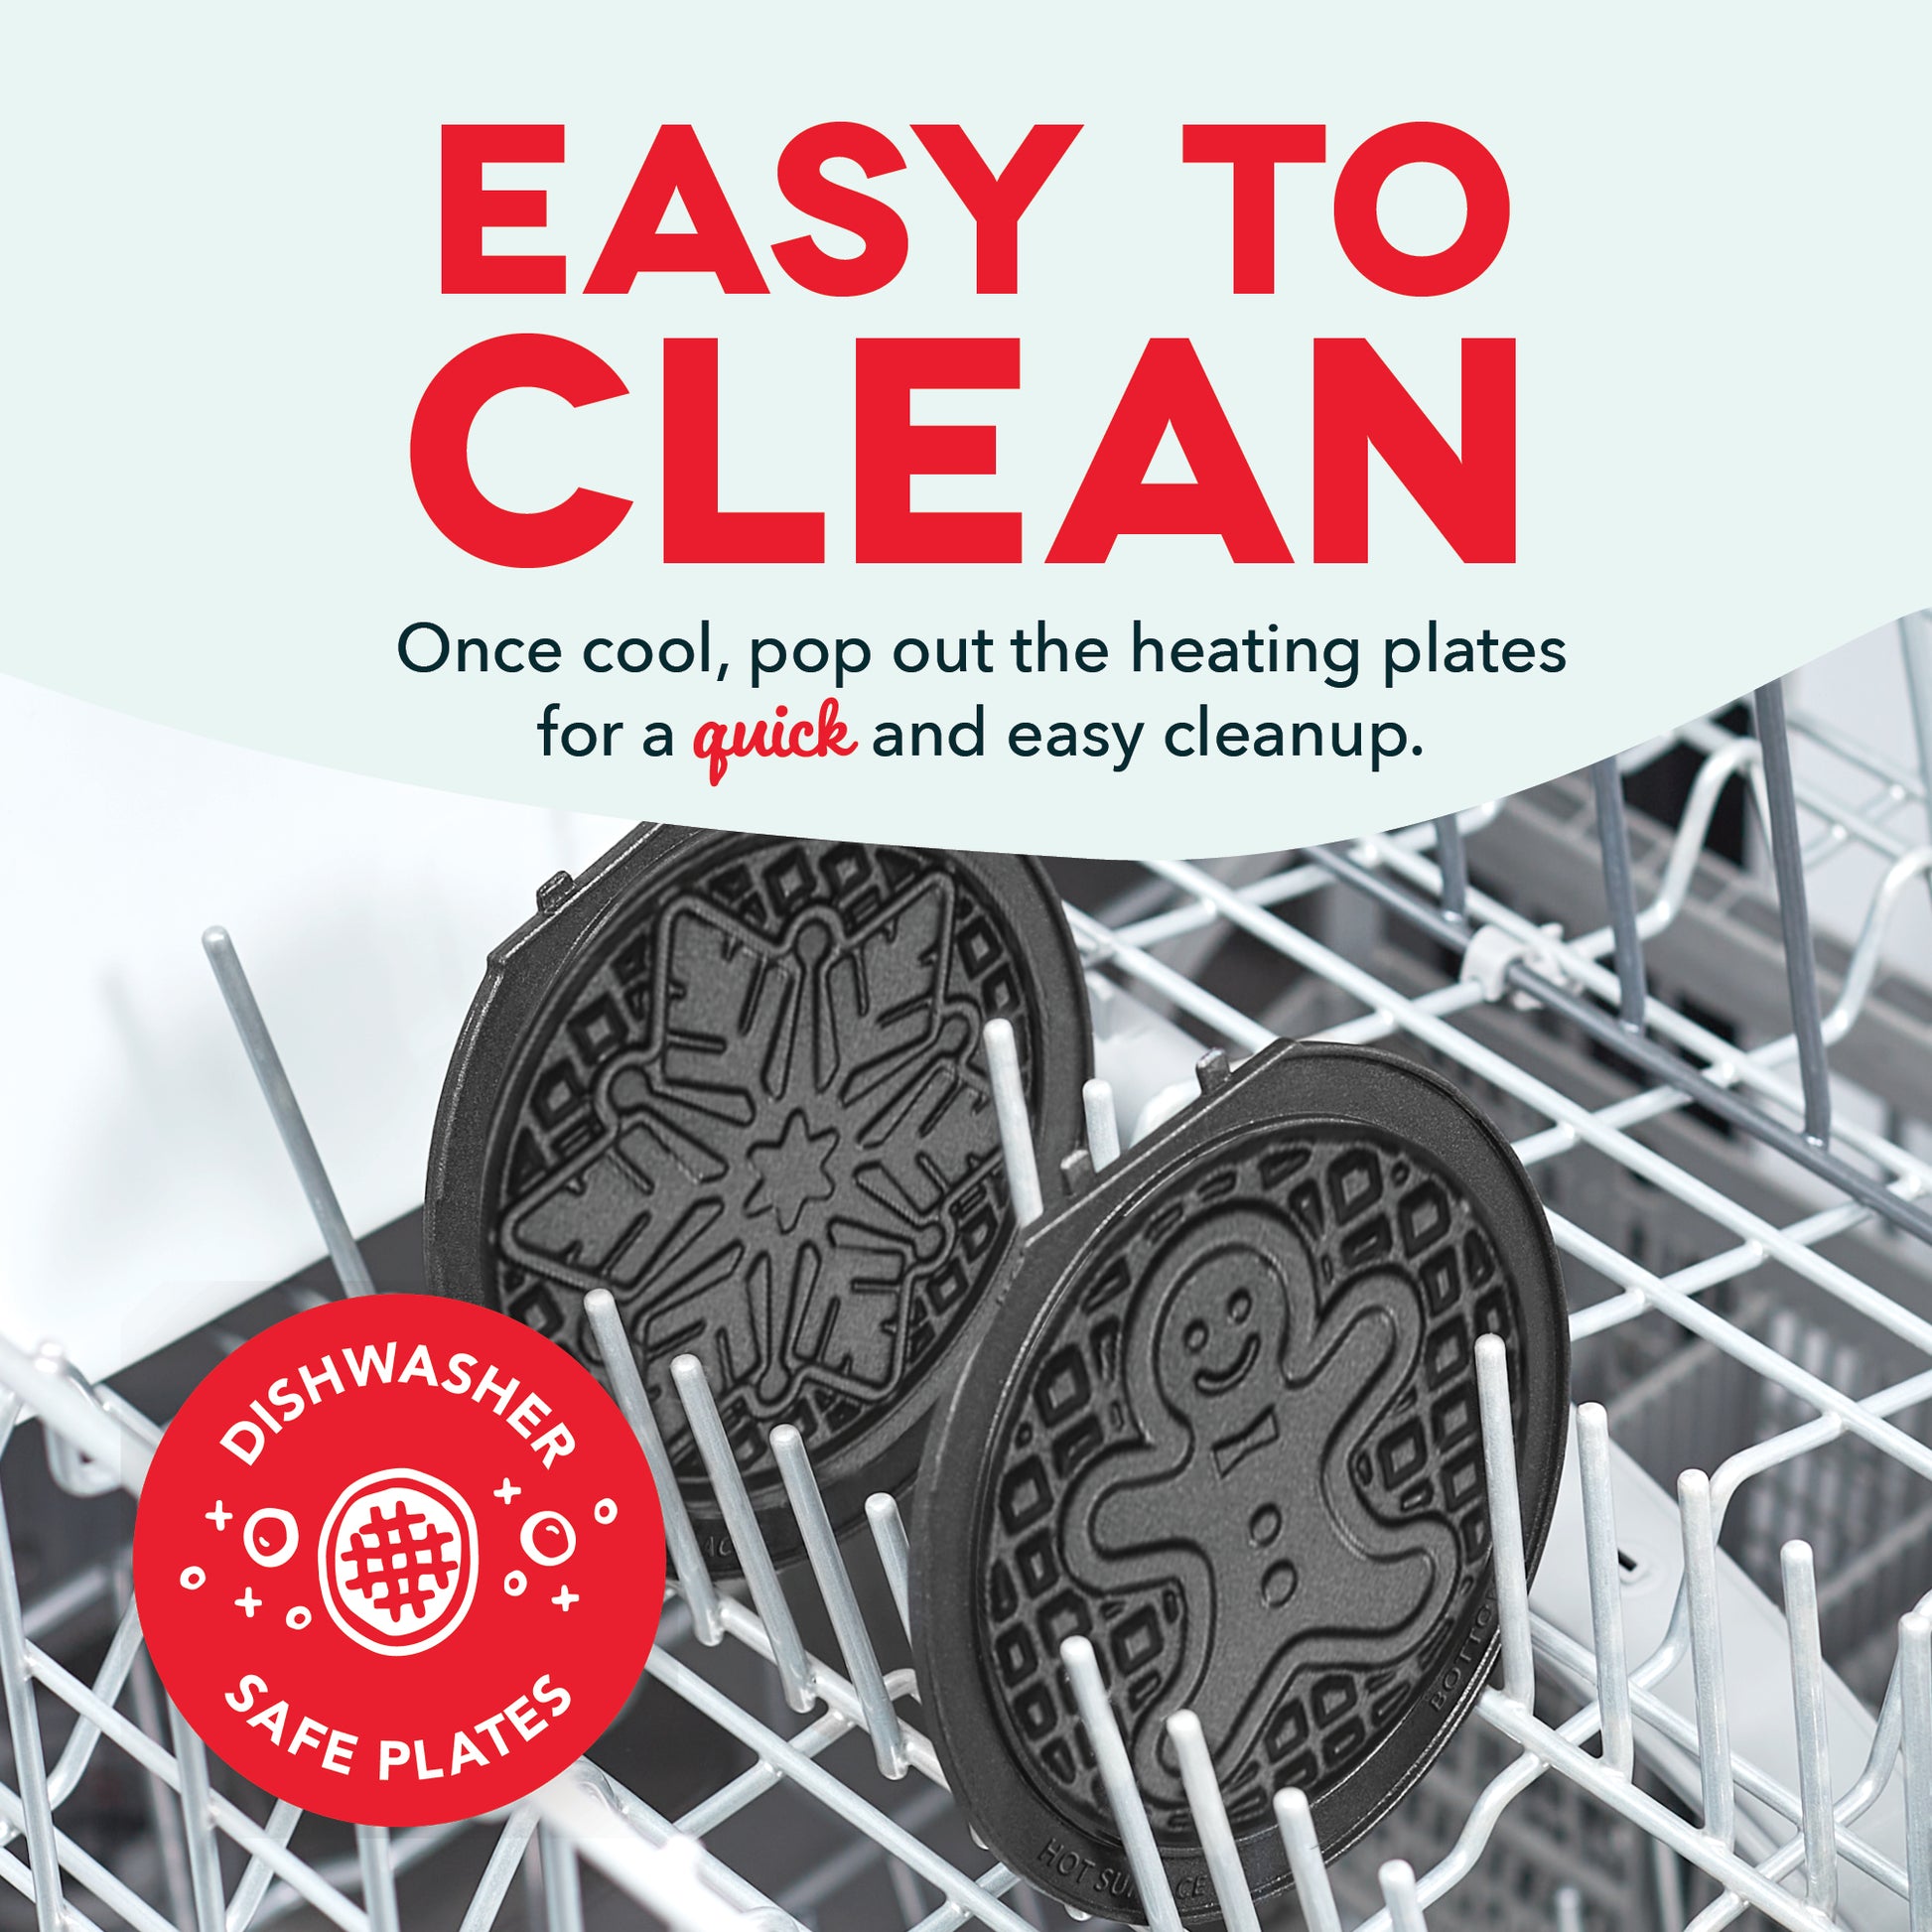 Removable dishwasher safe plates